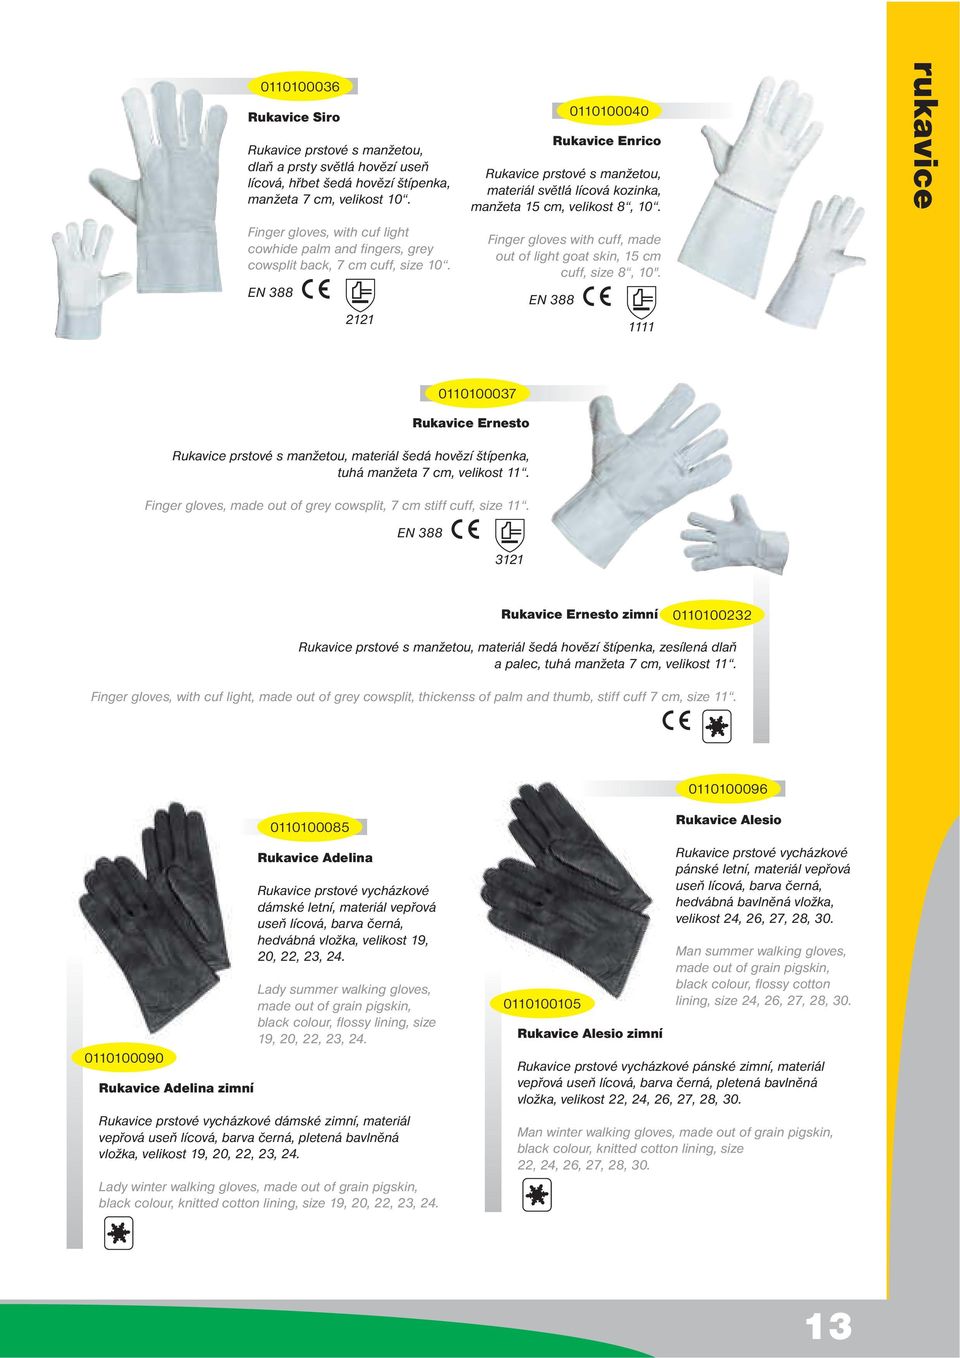 Finger gloves with cuff, made out of light goat skin, 15 cm cuff, size 8, 10". 0110100040 1111 Rukavice Ernesto materiál šedá hovězí štípenka, tuhá manžeta 7 cm, velikost 11.